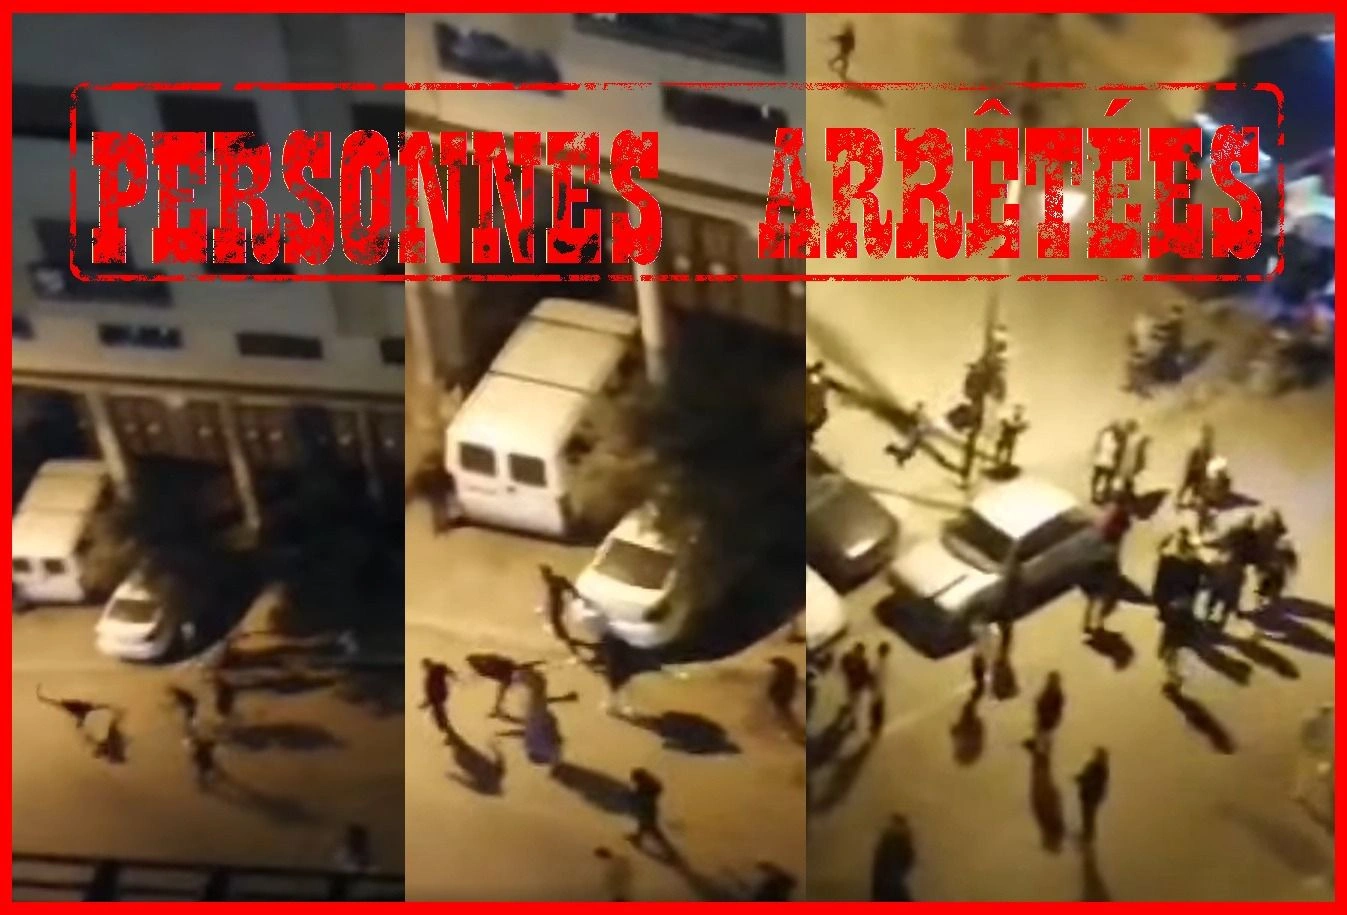 منطقة “حومة الحداد” بطنجة: توقيف خمسة أشخاص على خلفية شجار عنيف بالأسلحة البيضاء